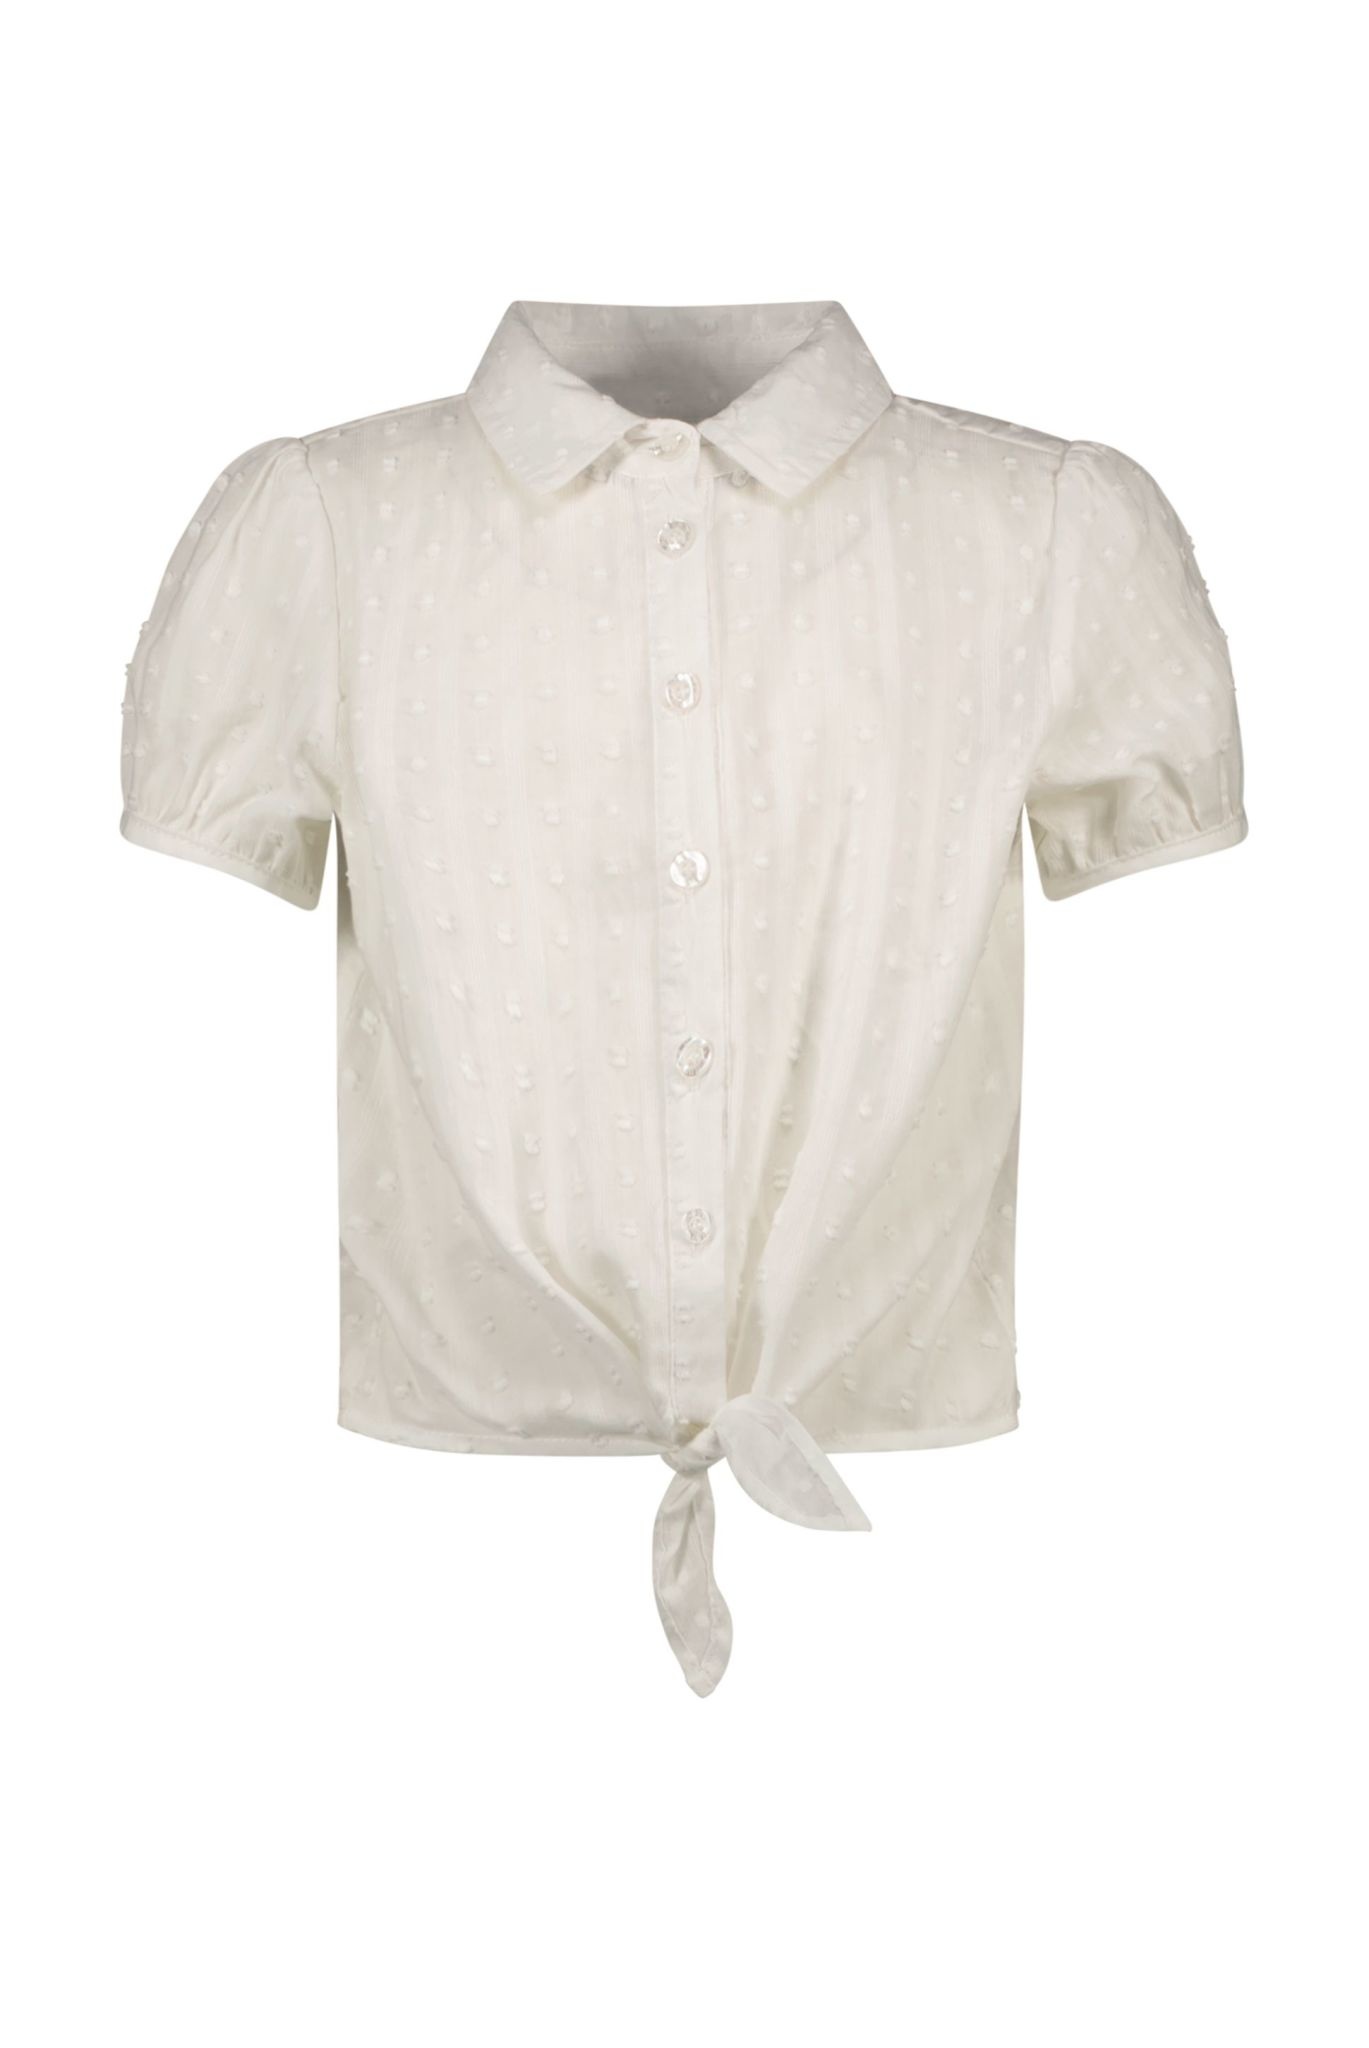 B.Nosy Meisjes korte mouwen blouse met knoop cotton